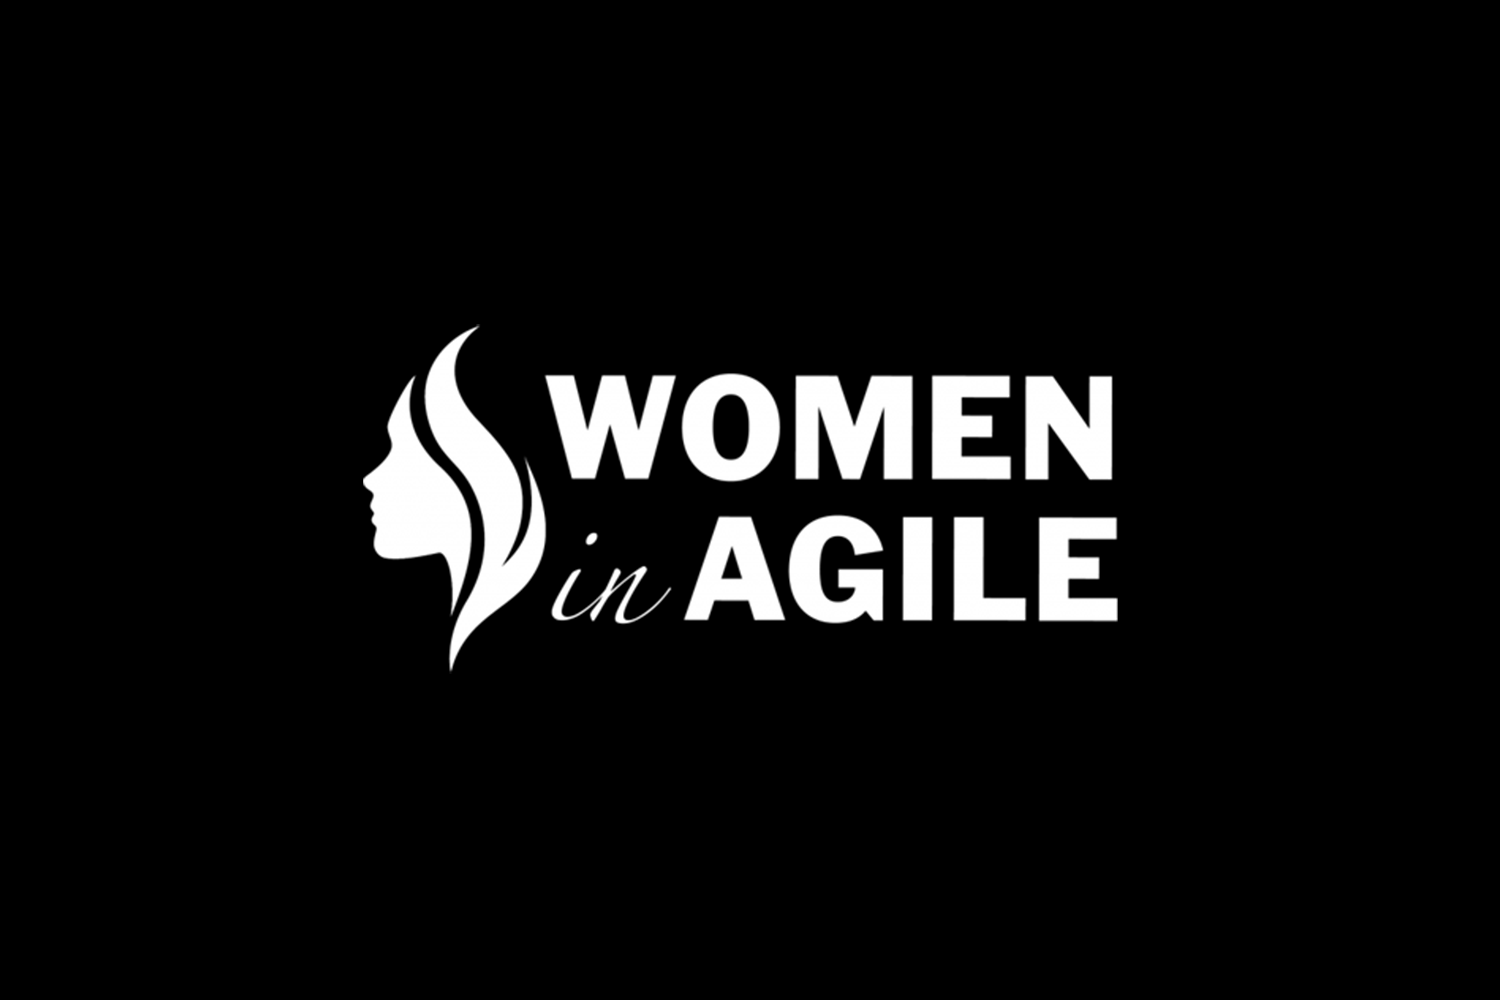 women in agile